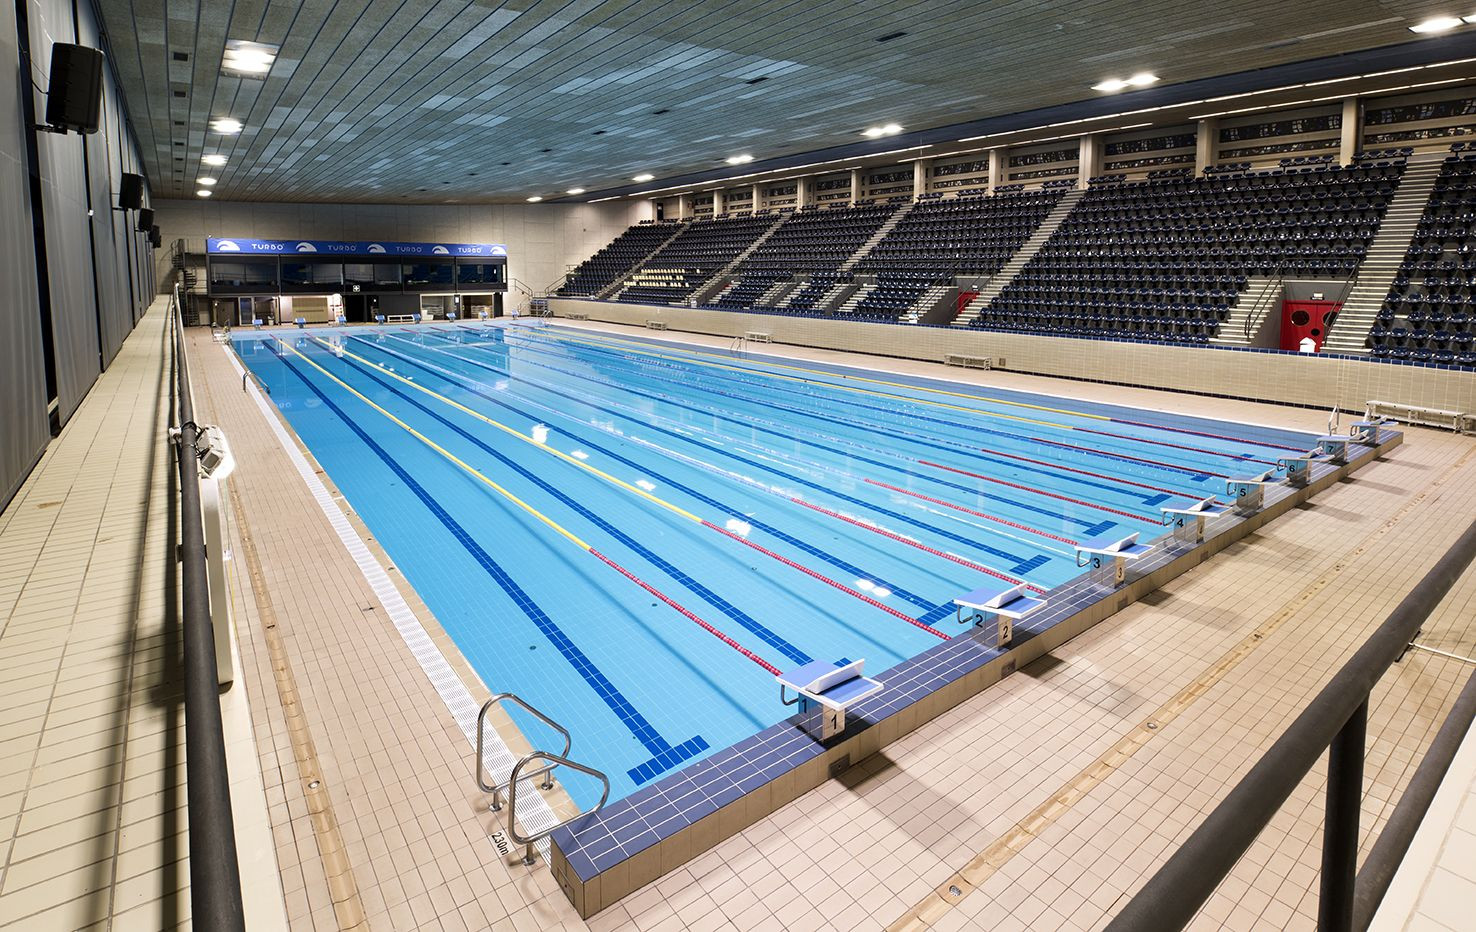 Imagen panorámica de la piscina olímpica de Sant Jordi en Barcelona / SANT JORDI